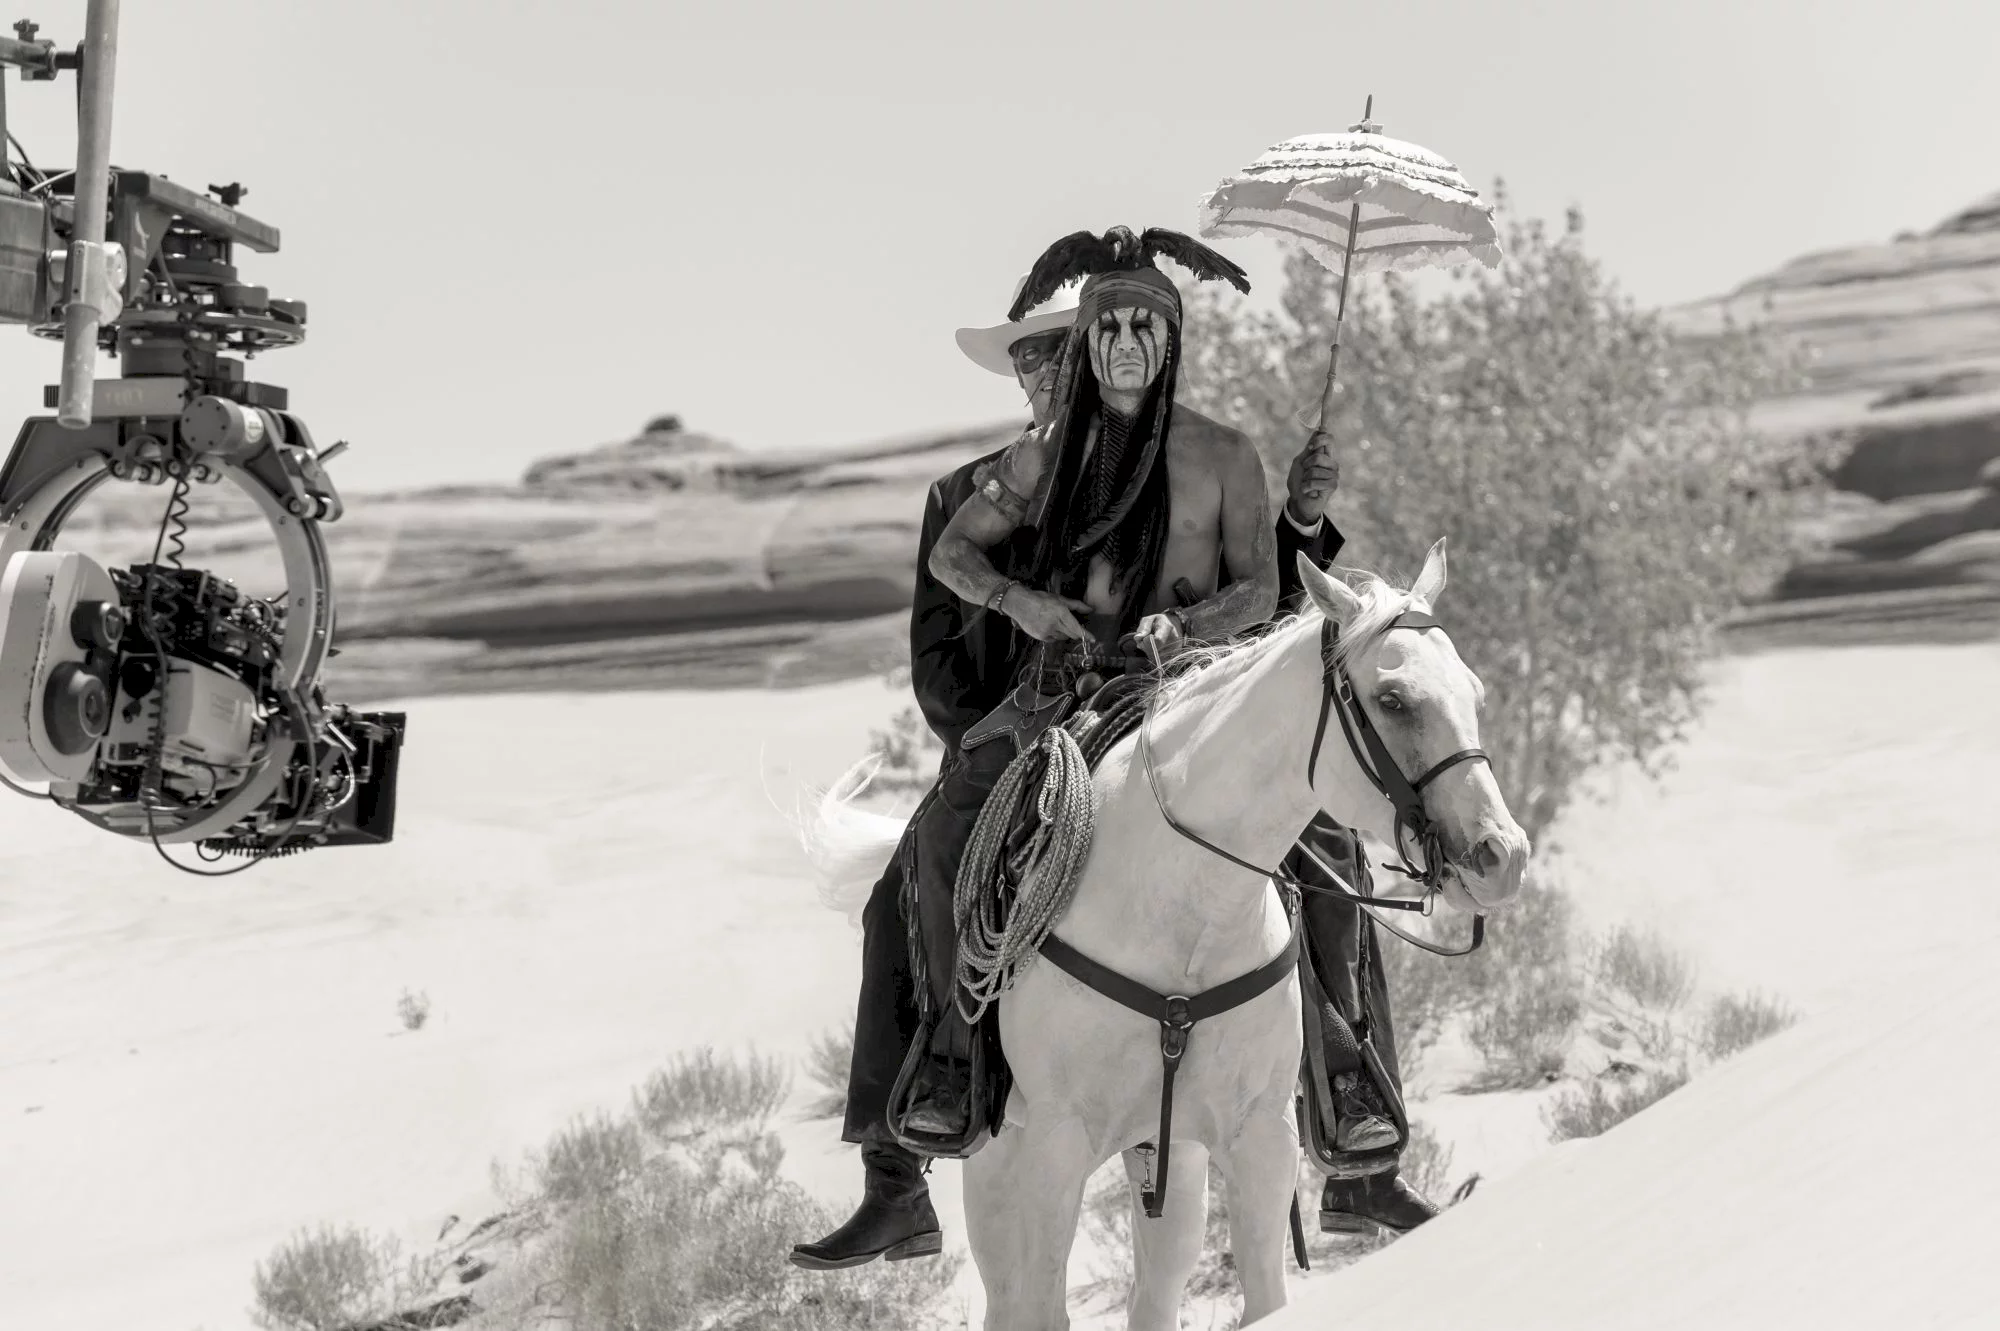 Photo du film : Lone Ranger, Naissance d'un héros 